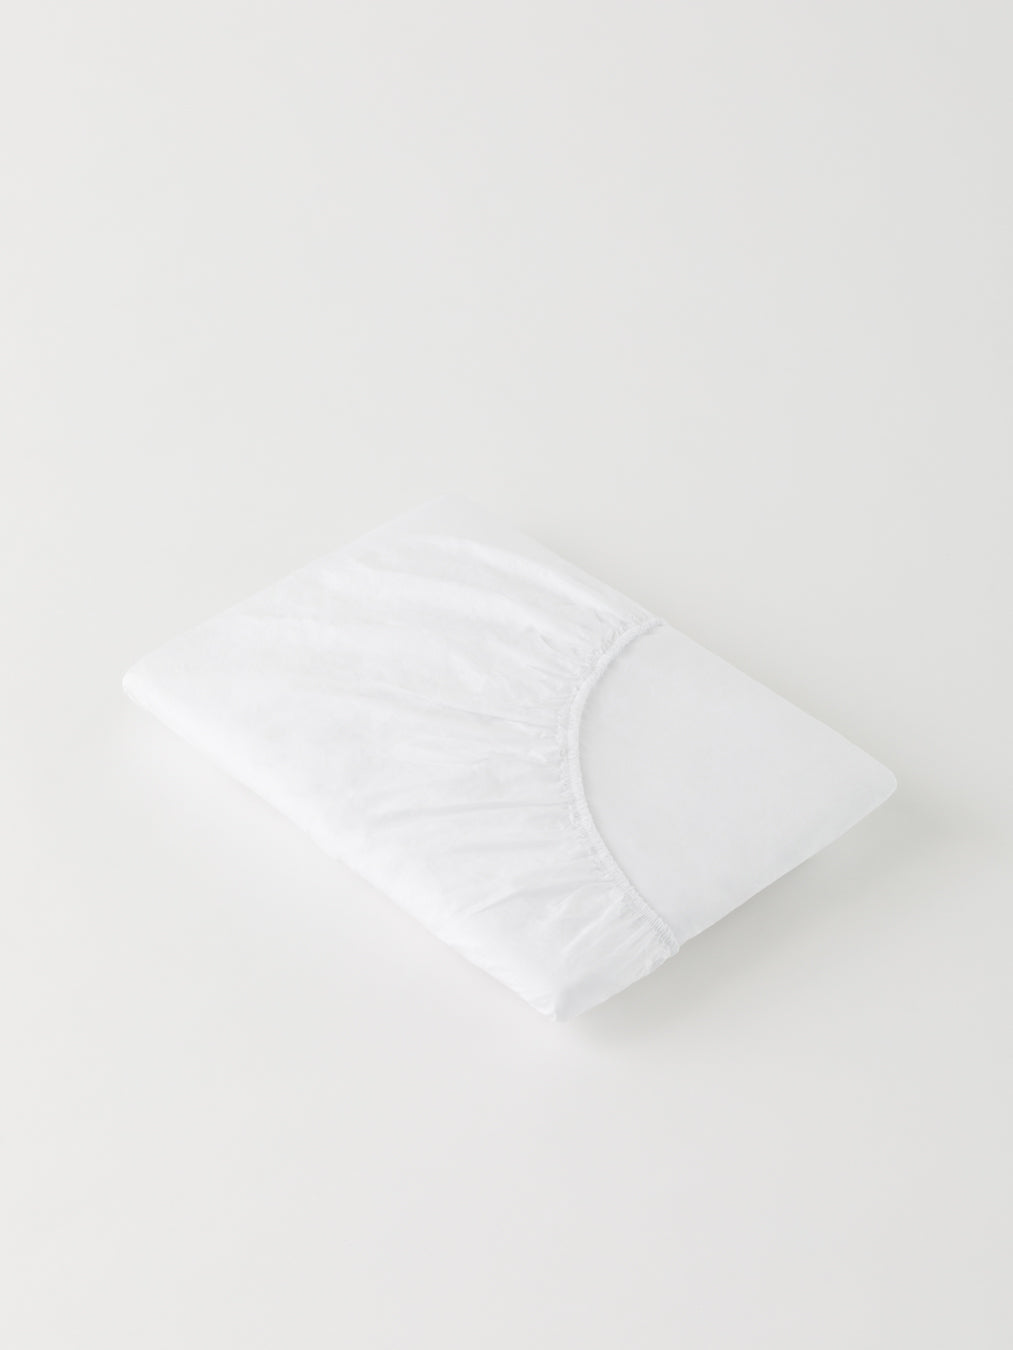 DAWN - Percale Faconlagen (180x200x35) - Bright White - 100% økologisk bomuld - Hvidt